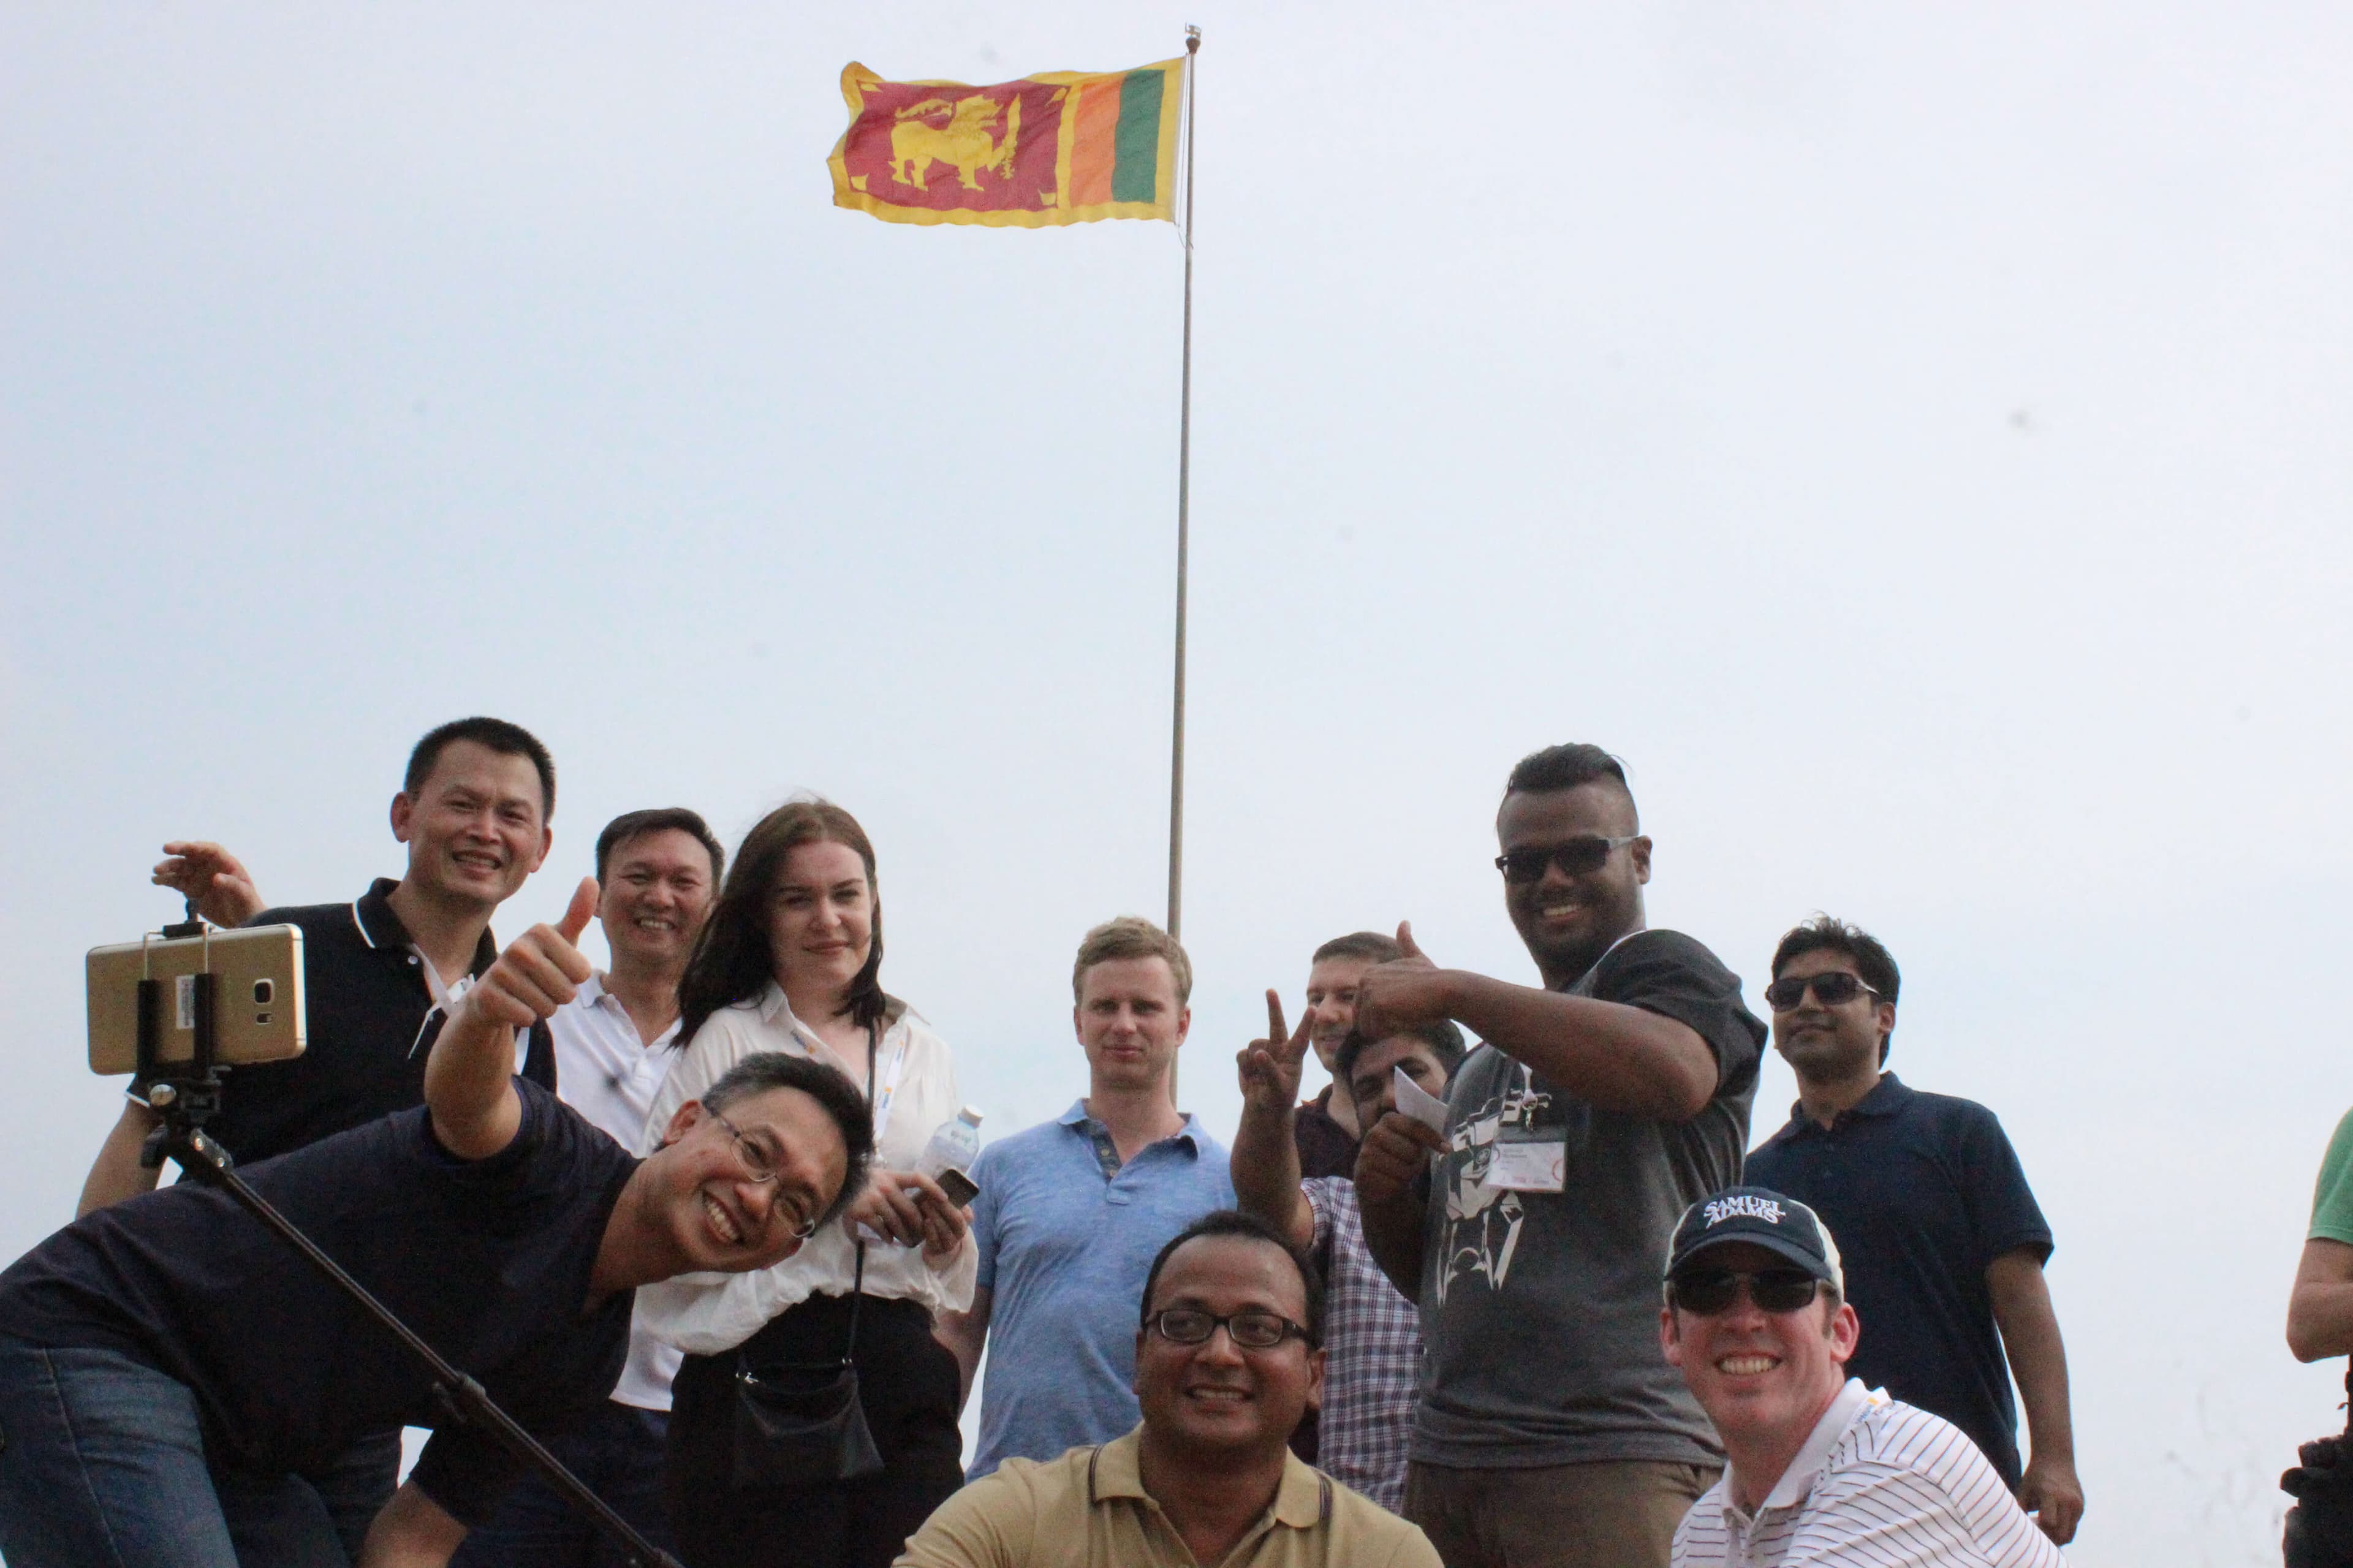 以斯里兰卡国旗为背景的团队合影。